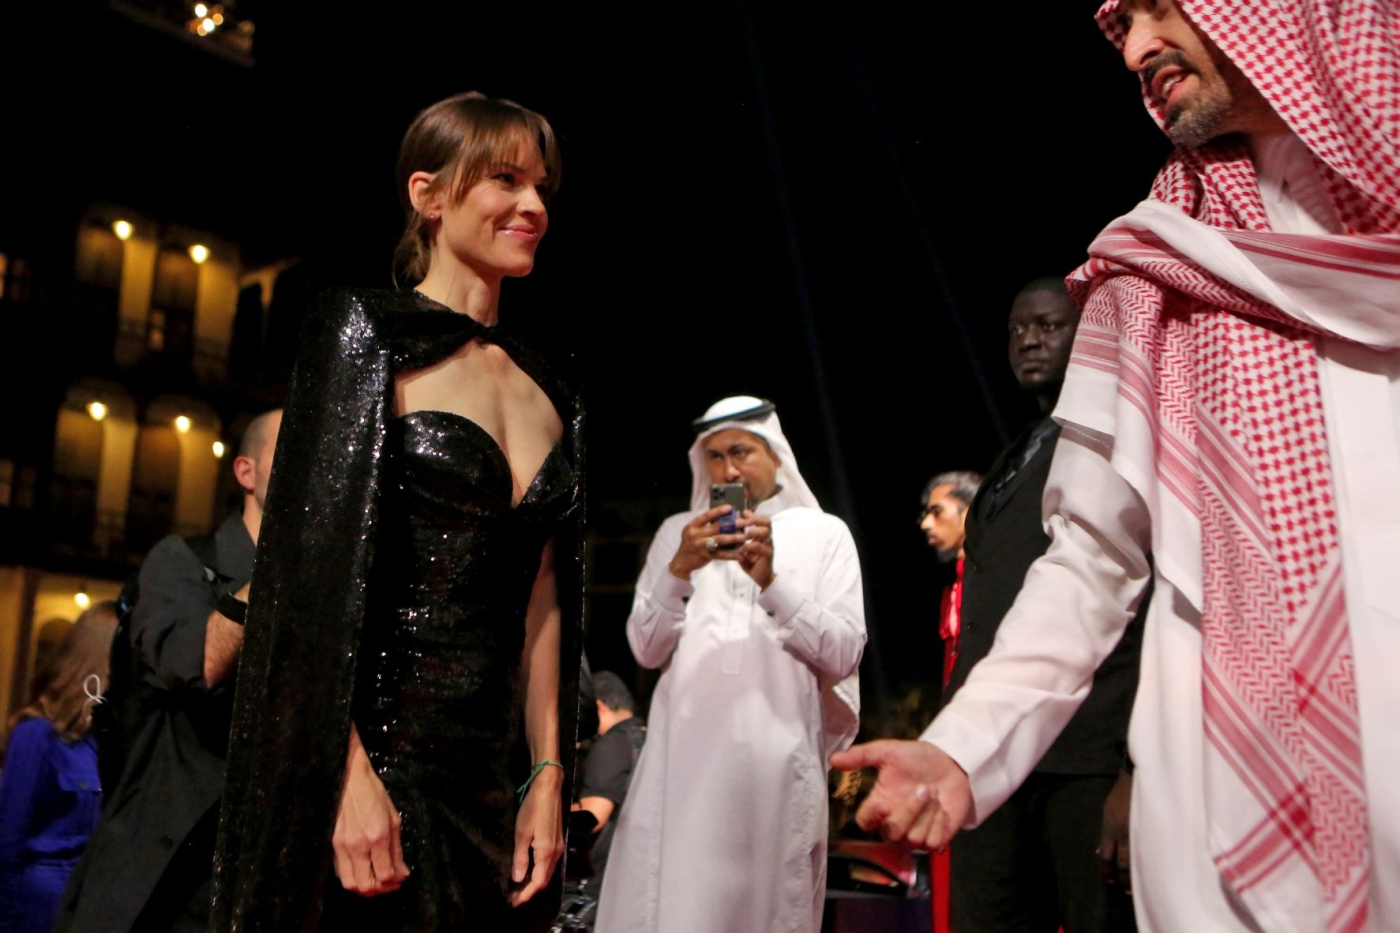 La star hollywoodienne Hillary Swank assiste au Festival du film de la mer Rouge dans la ville saoudienne de Djeddah, en décembre 2021 (AFP/Red Sea Film Festival)